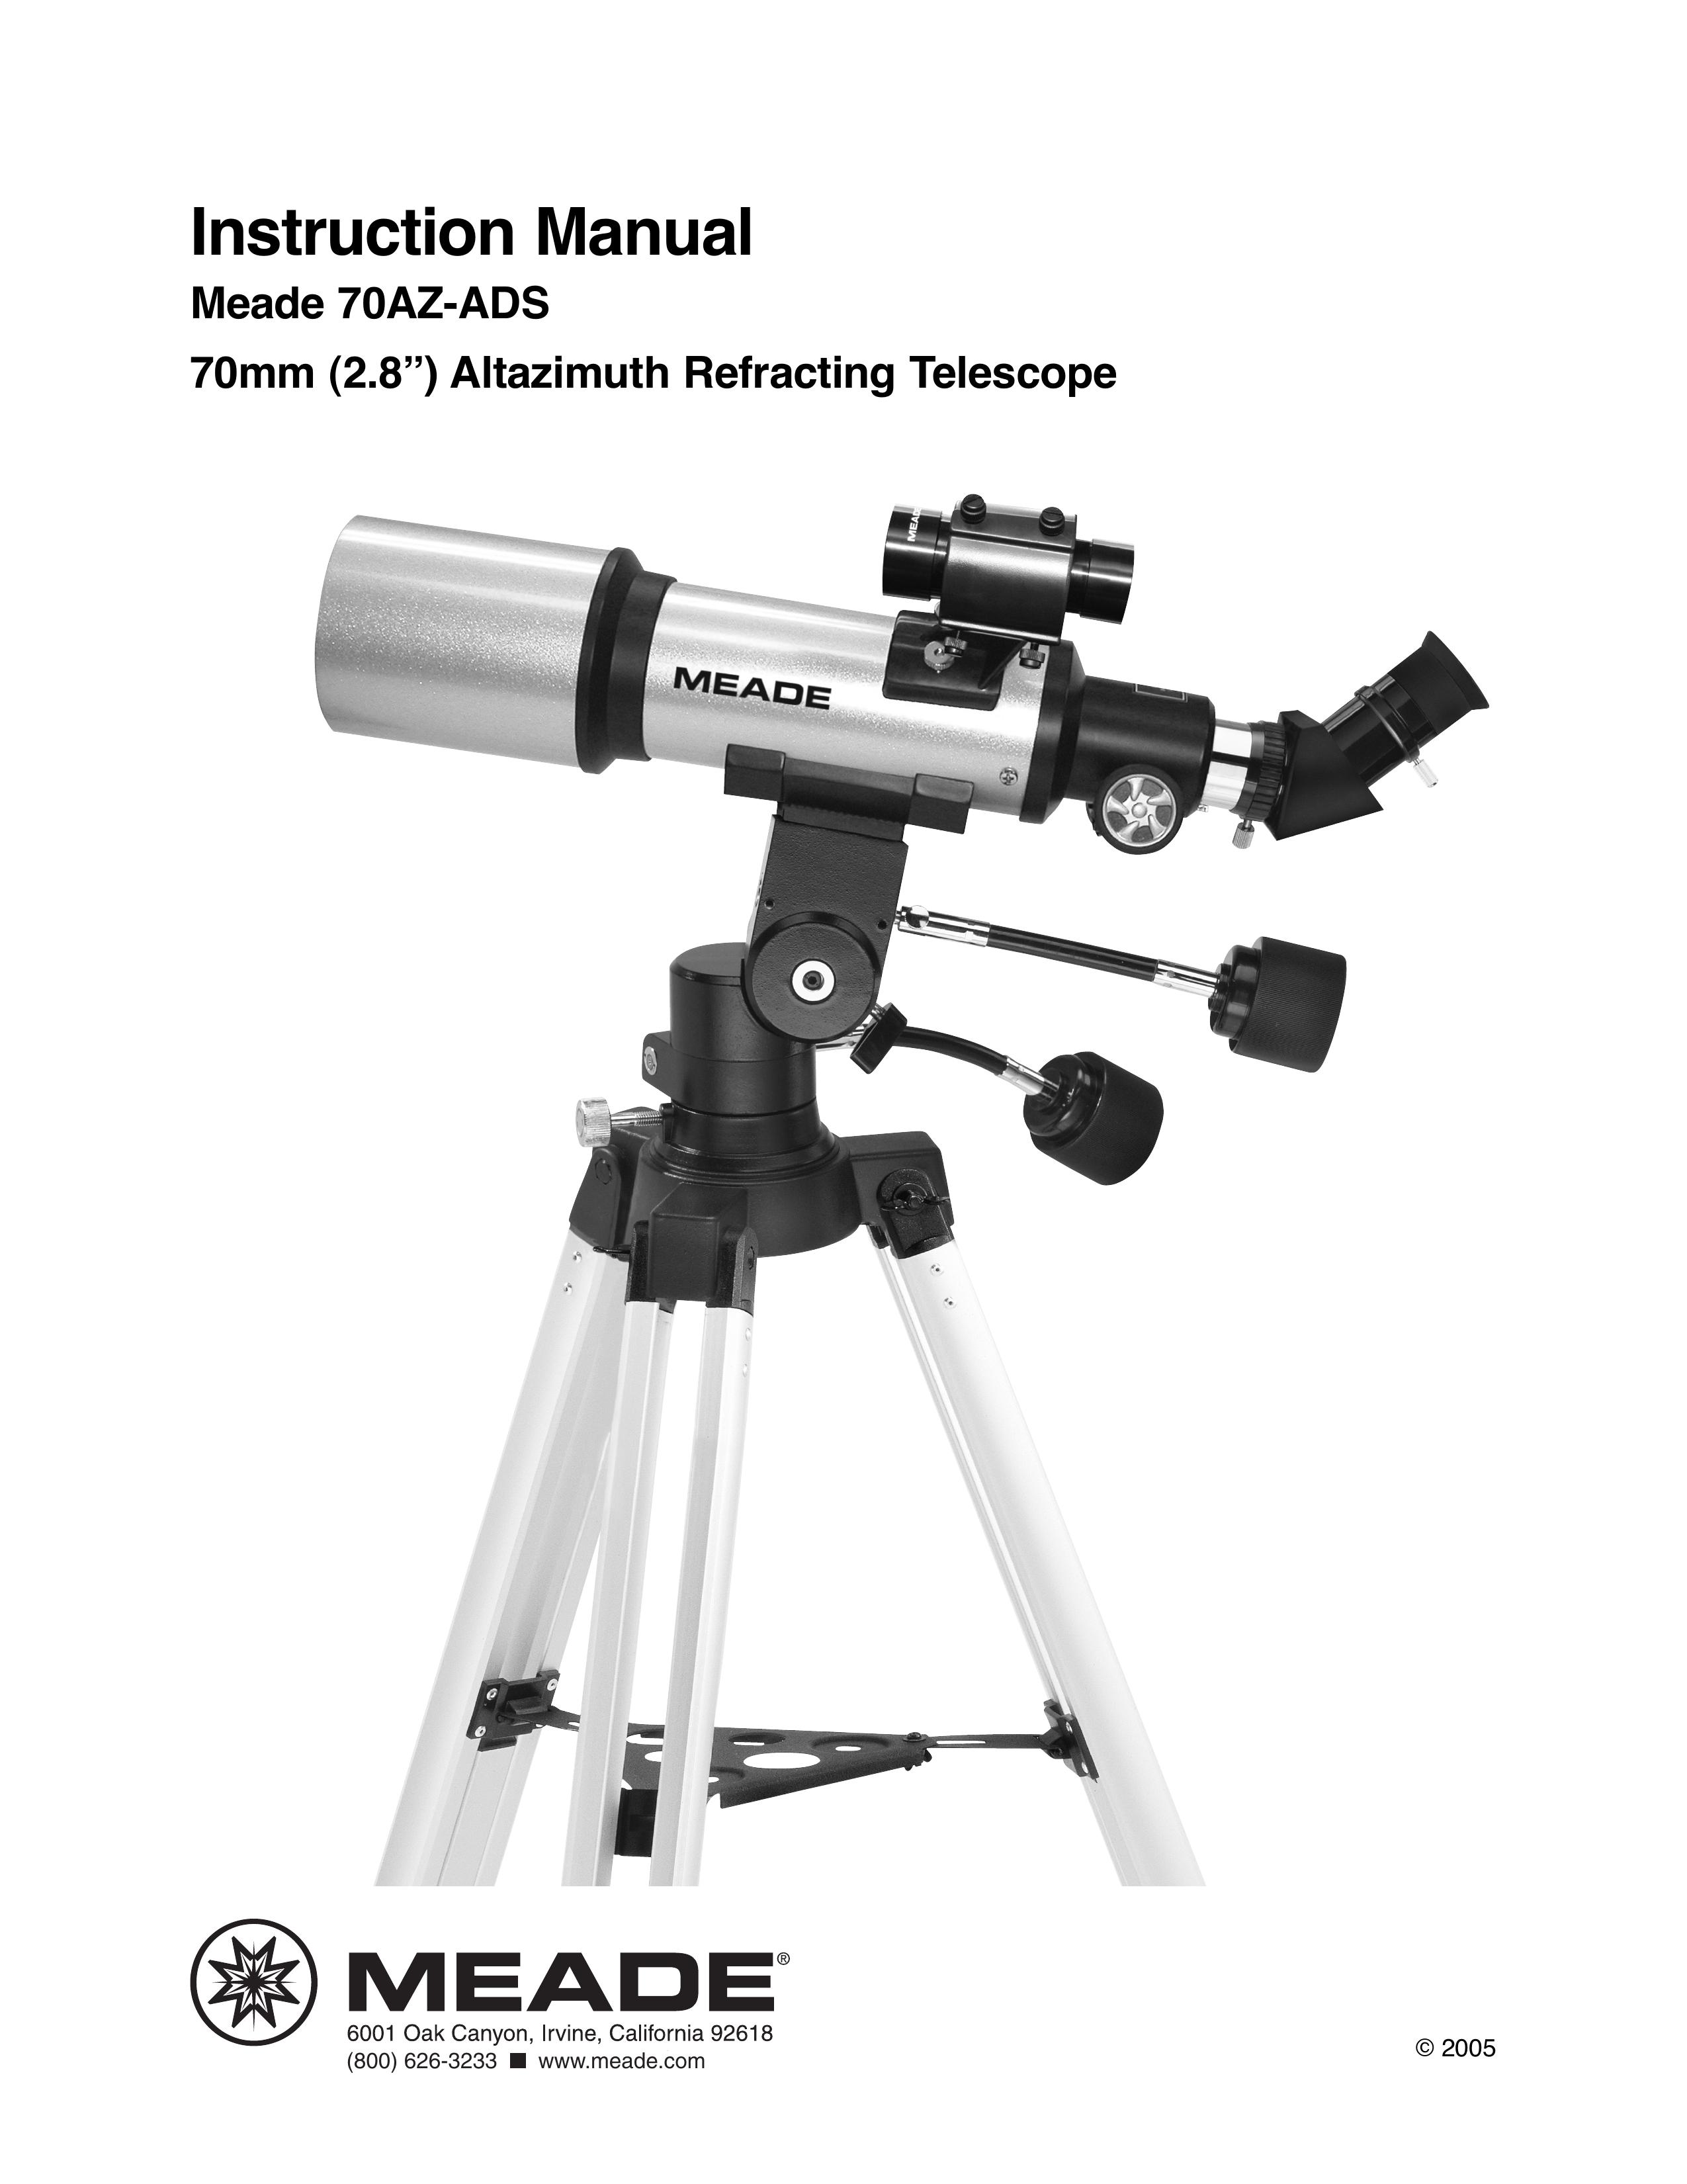 Meade 70AZ-ADS Telescope User Manual